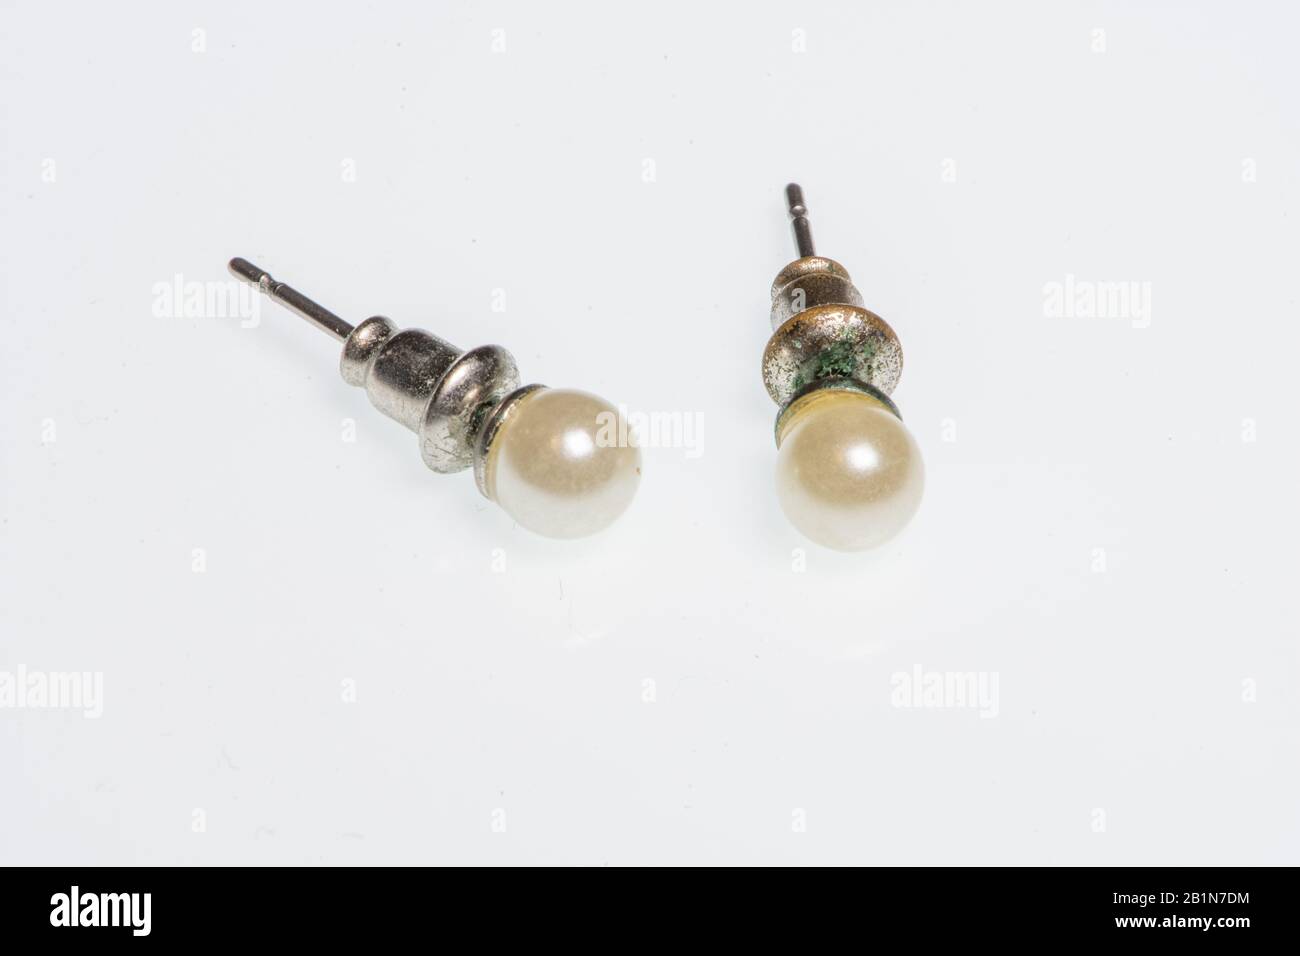 Coppia di orecchini in argento con piccola perla, particolare immagine di gioiello Foto Stock